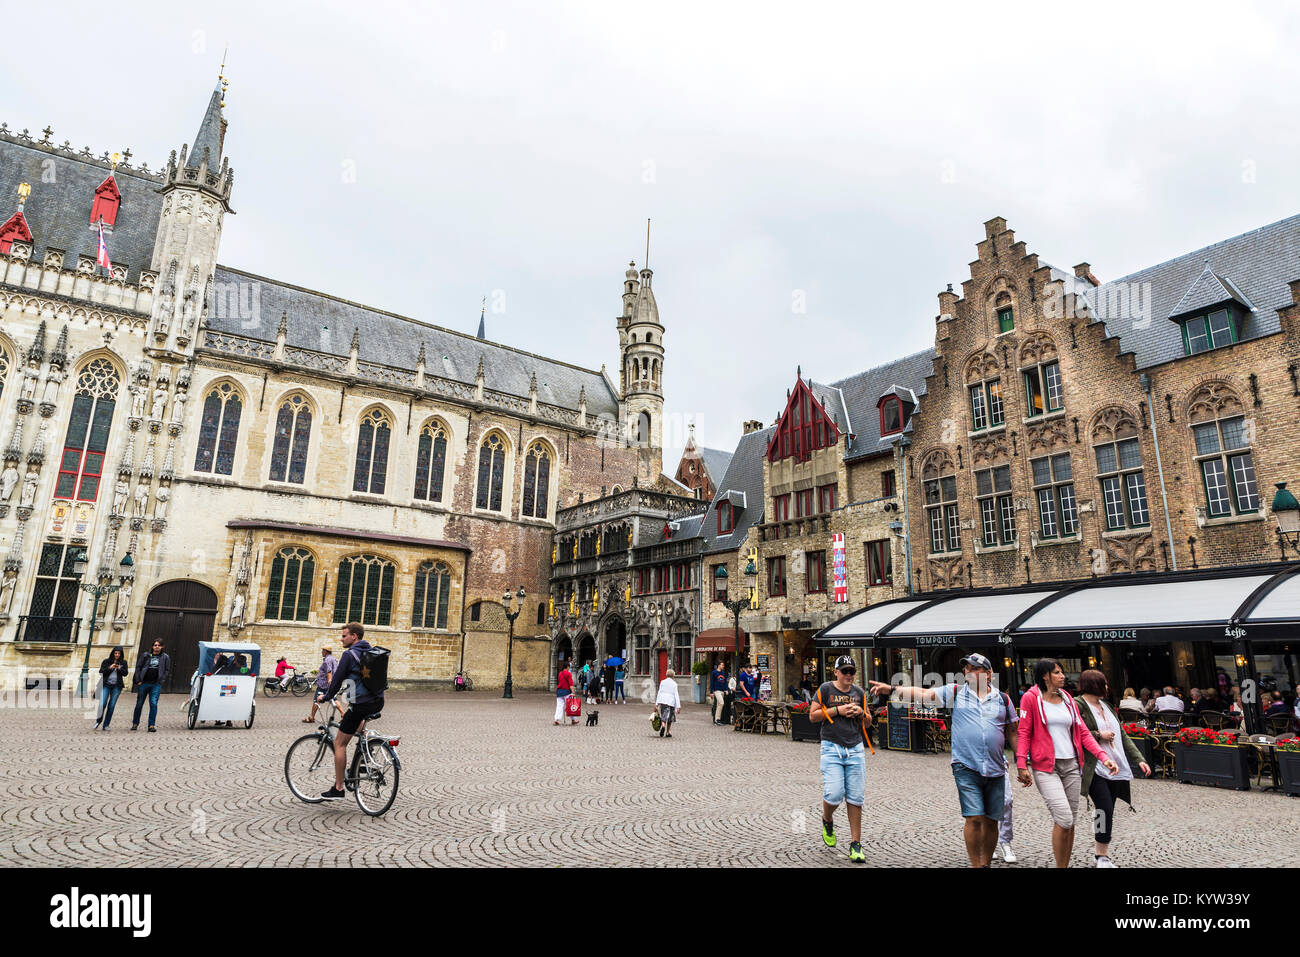 Bruges, Belgio - 31 agosto 2017: complesso architettonico in Piazza Burg con ristoranti e la gente a piedi nella città medievale di Bruges, Belg Foto Stock